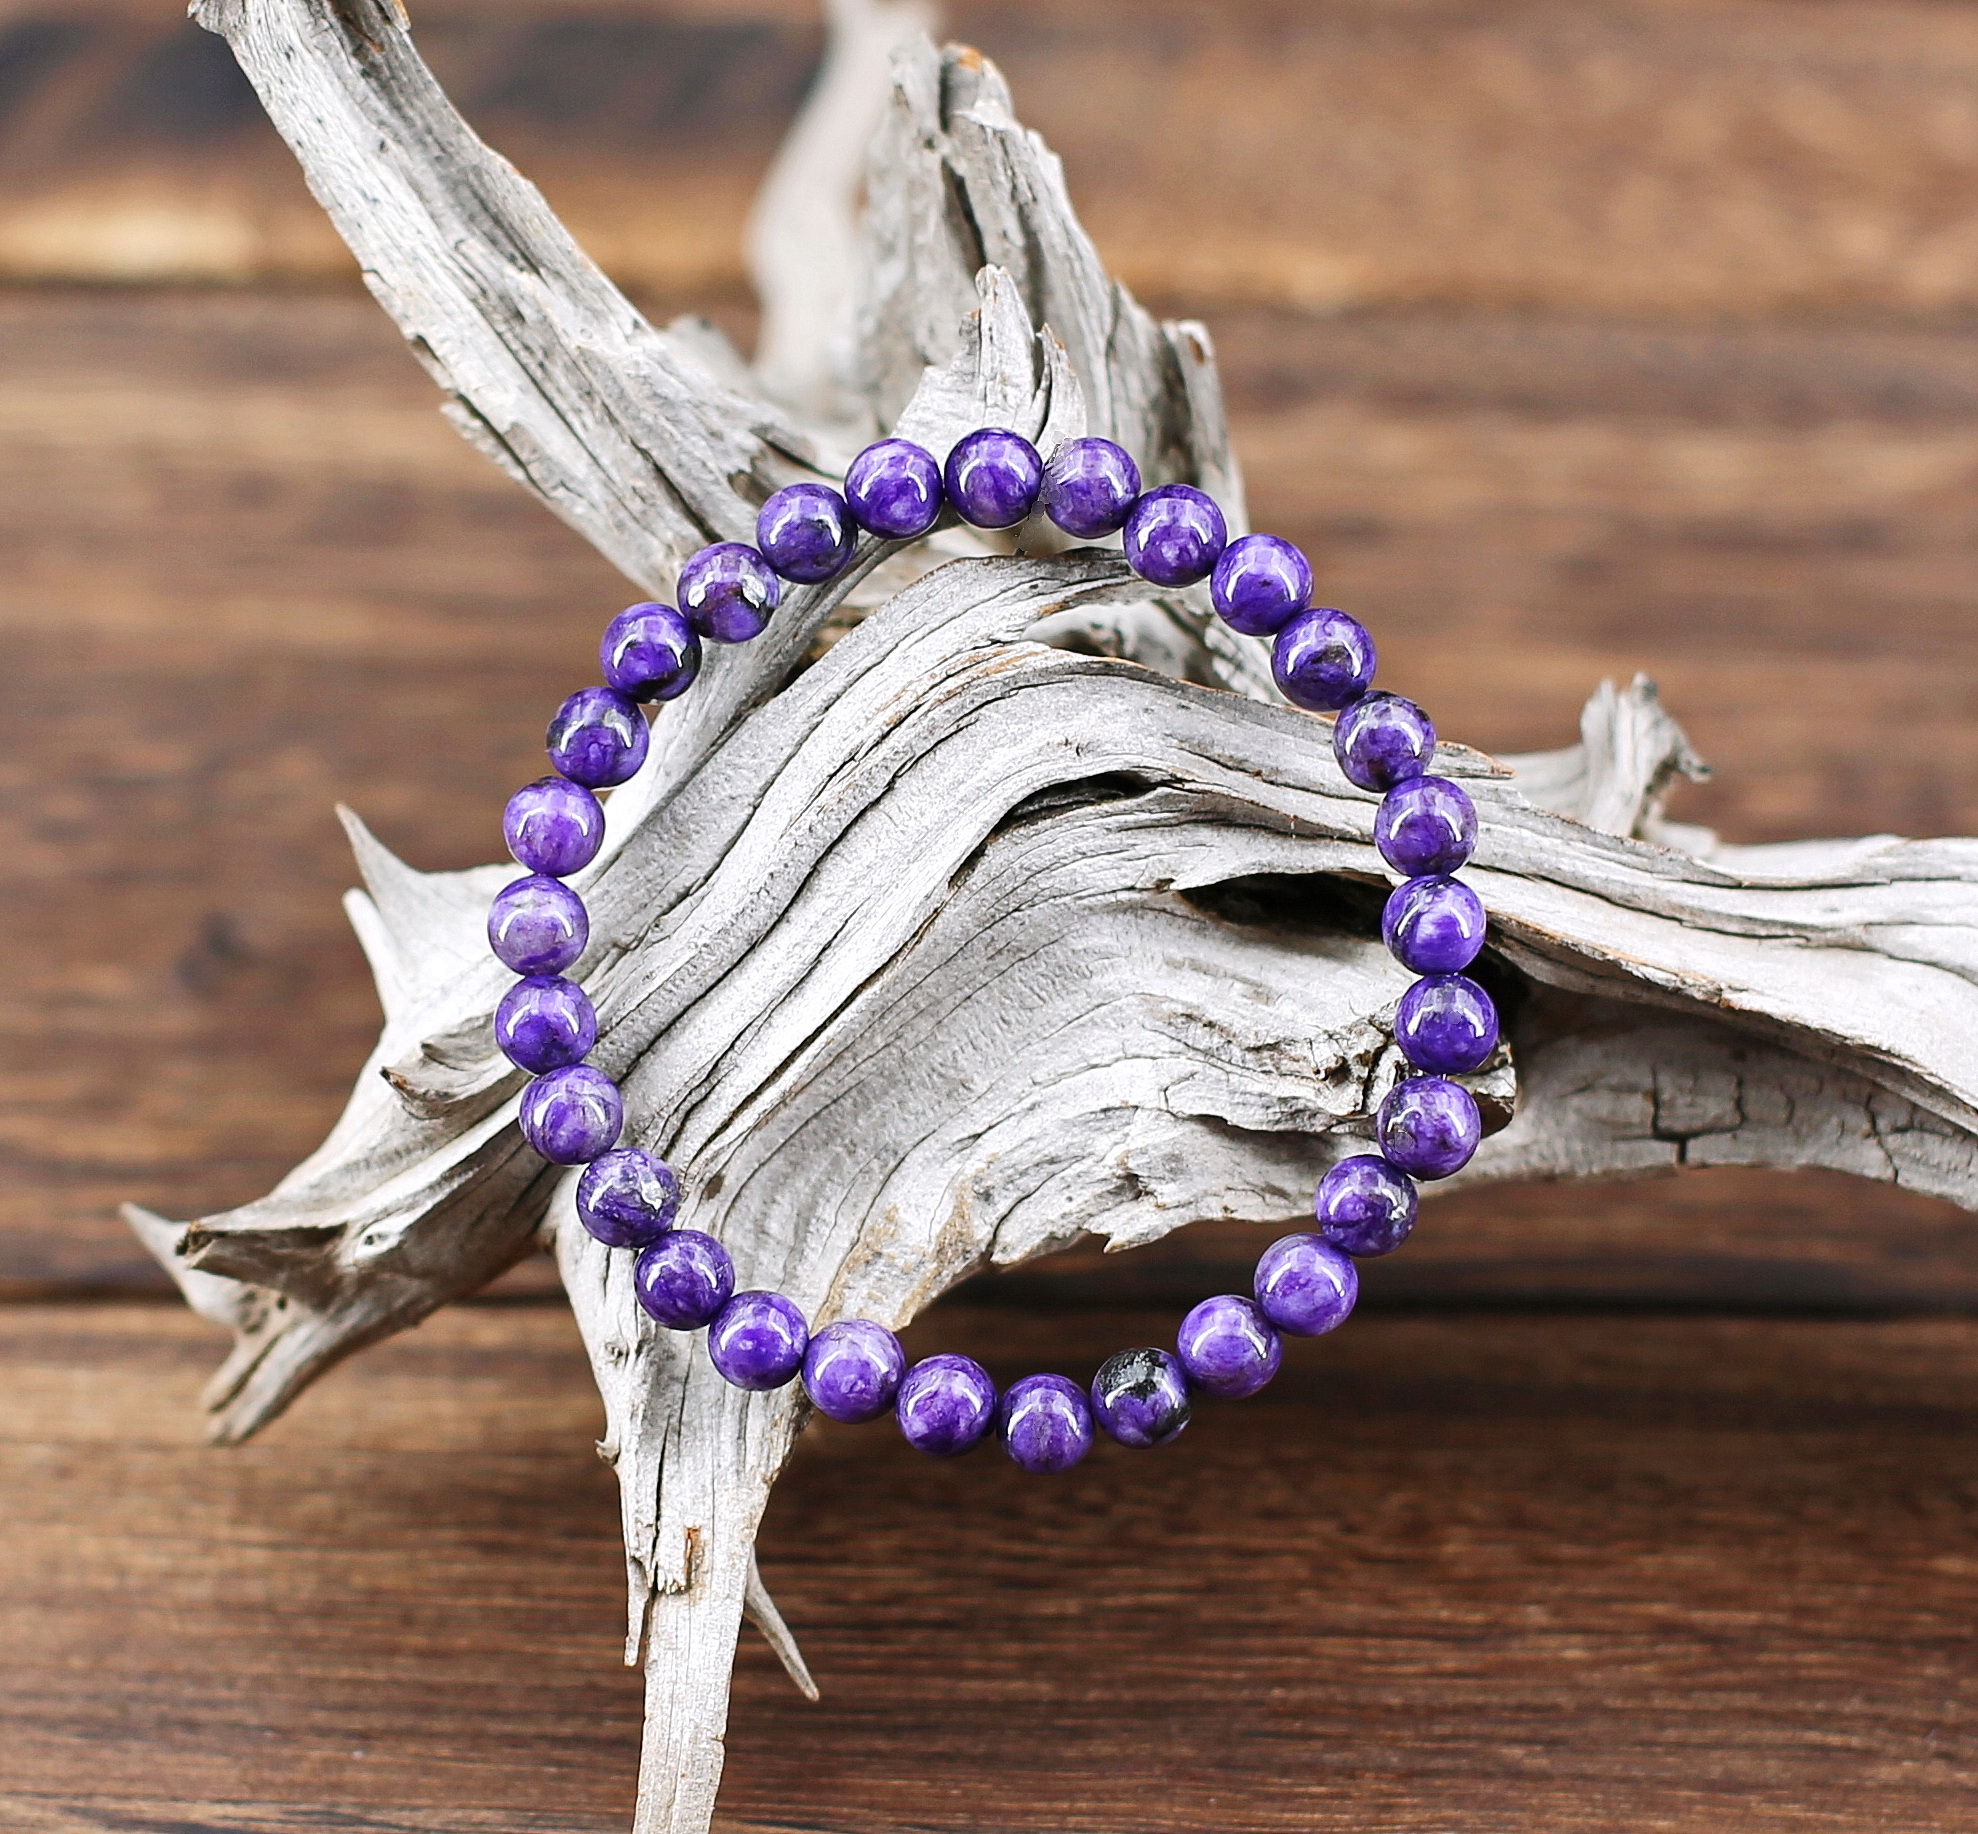 Perles de pierre Charoïte marbrée de gris et d'un beau violet lumineux, légèrement pourpré. Grain fin. Au poignet effet agréable apportant une belle tonicité. S'harmonise facilement avec toutes couleurs.